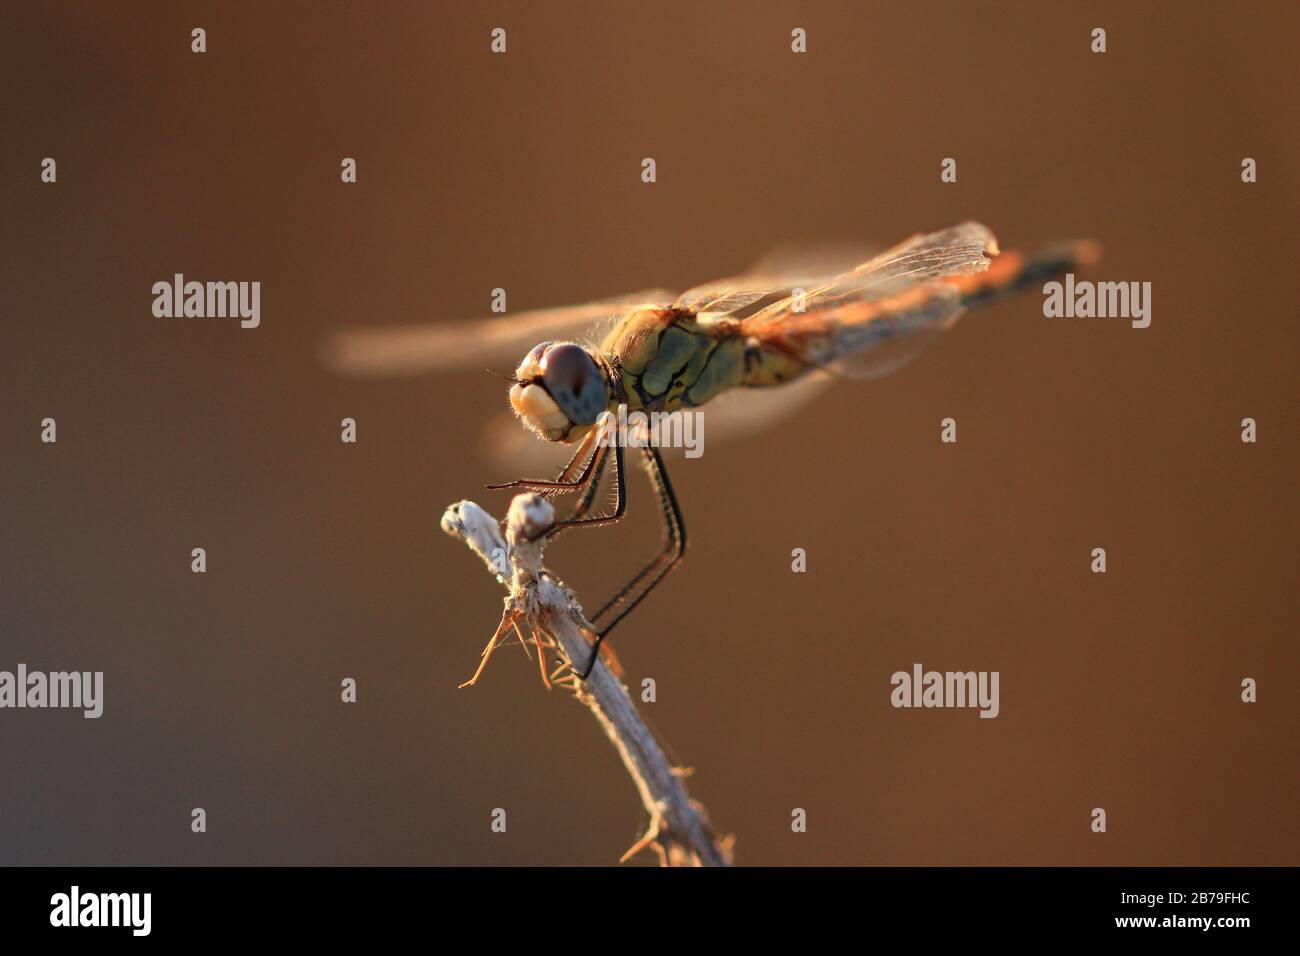 Retrato de una libélula (Sympetrum commun) en reposo sobre un tallo seco, a la luz del final del día en agosto Foto de stock